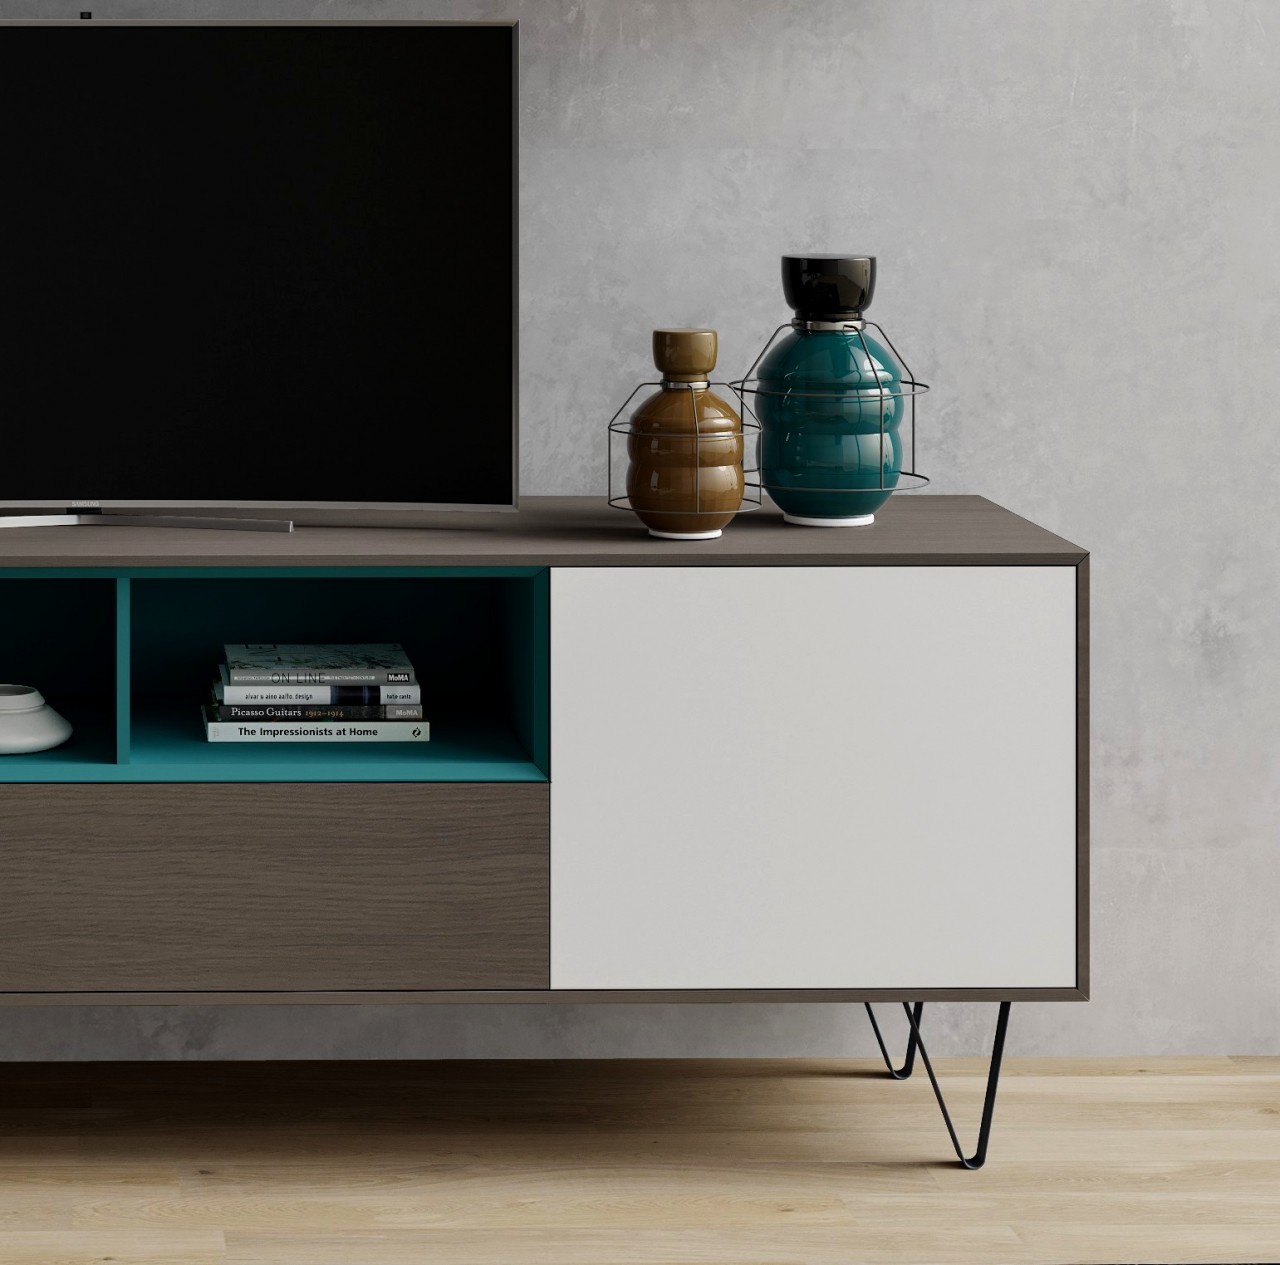 Transforme o seu espaço em casa com a Estante TV Enkel V9! Prática, moderna e robusta, esta estante é ideal para organizar e exibir os seus dispositivos de forma elegante.